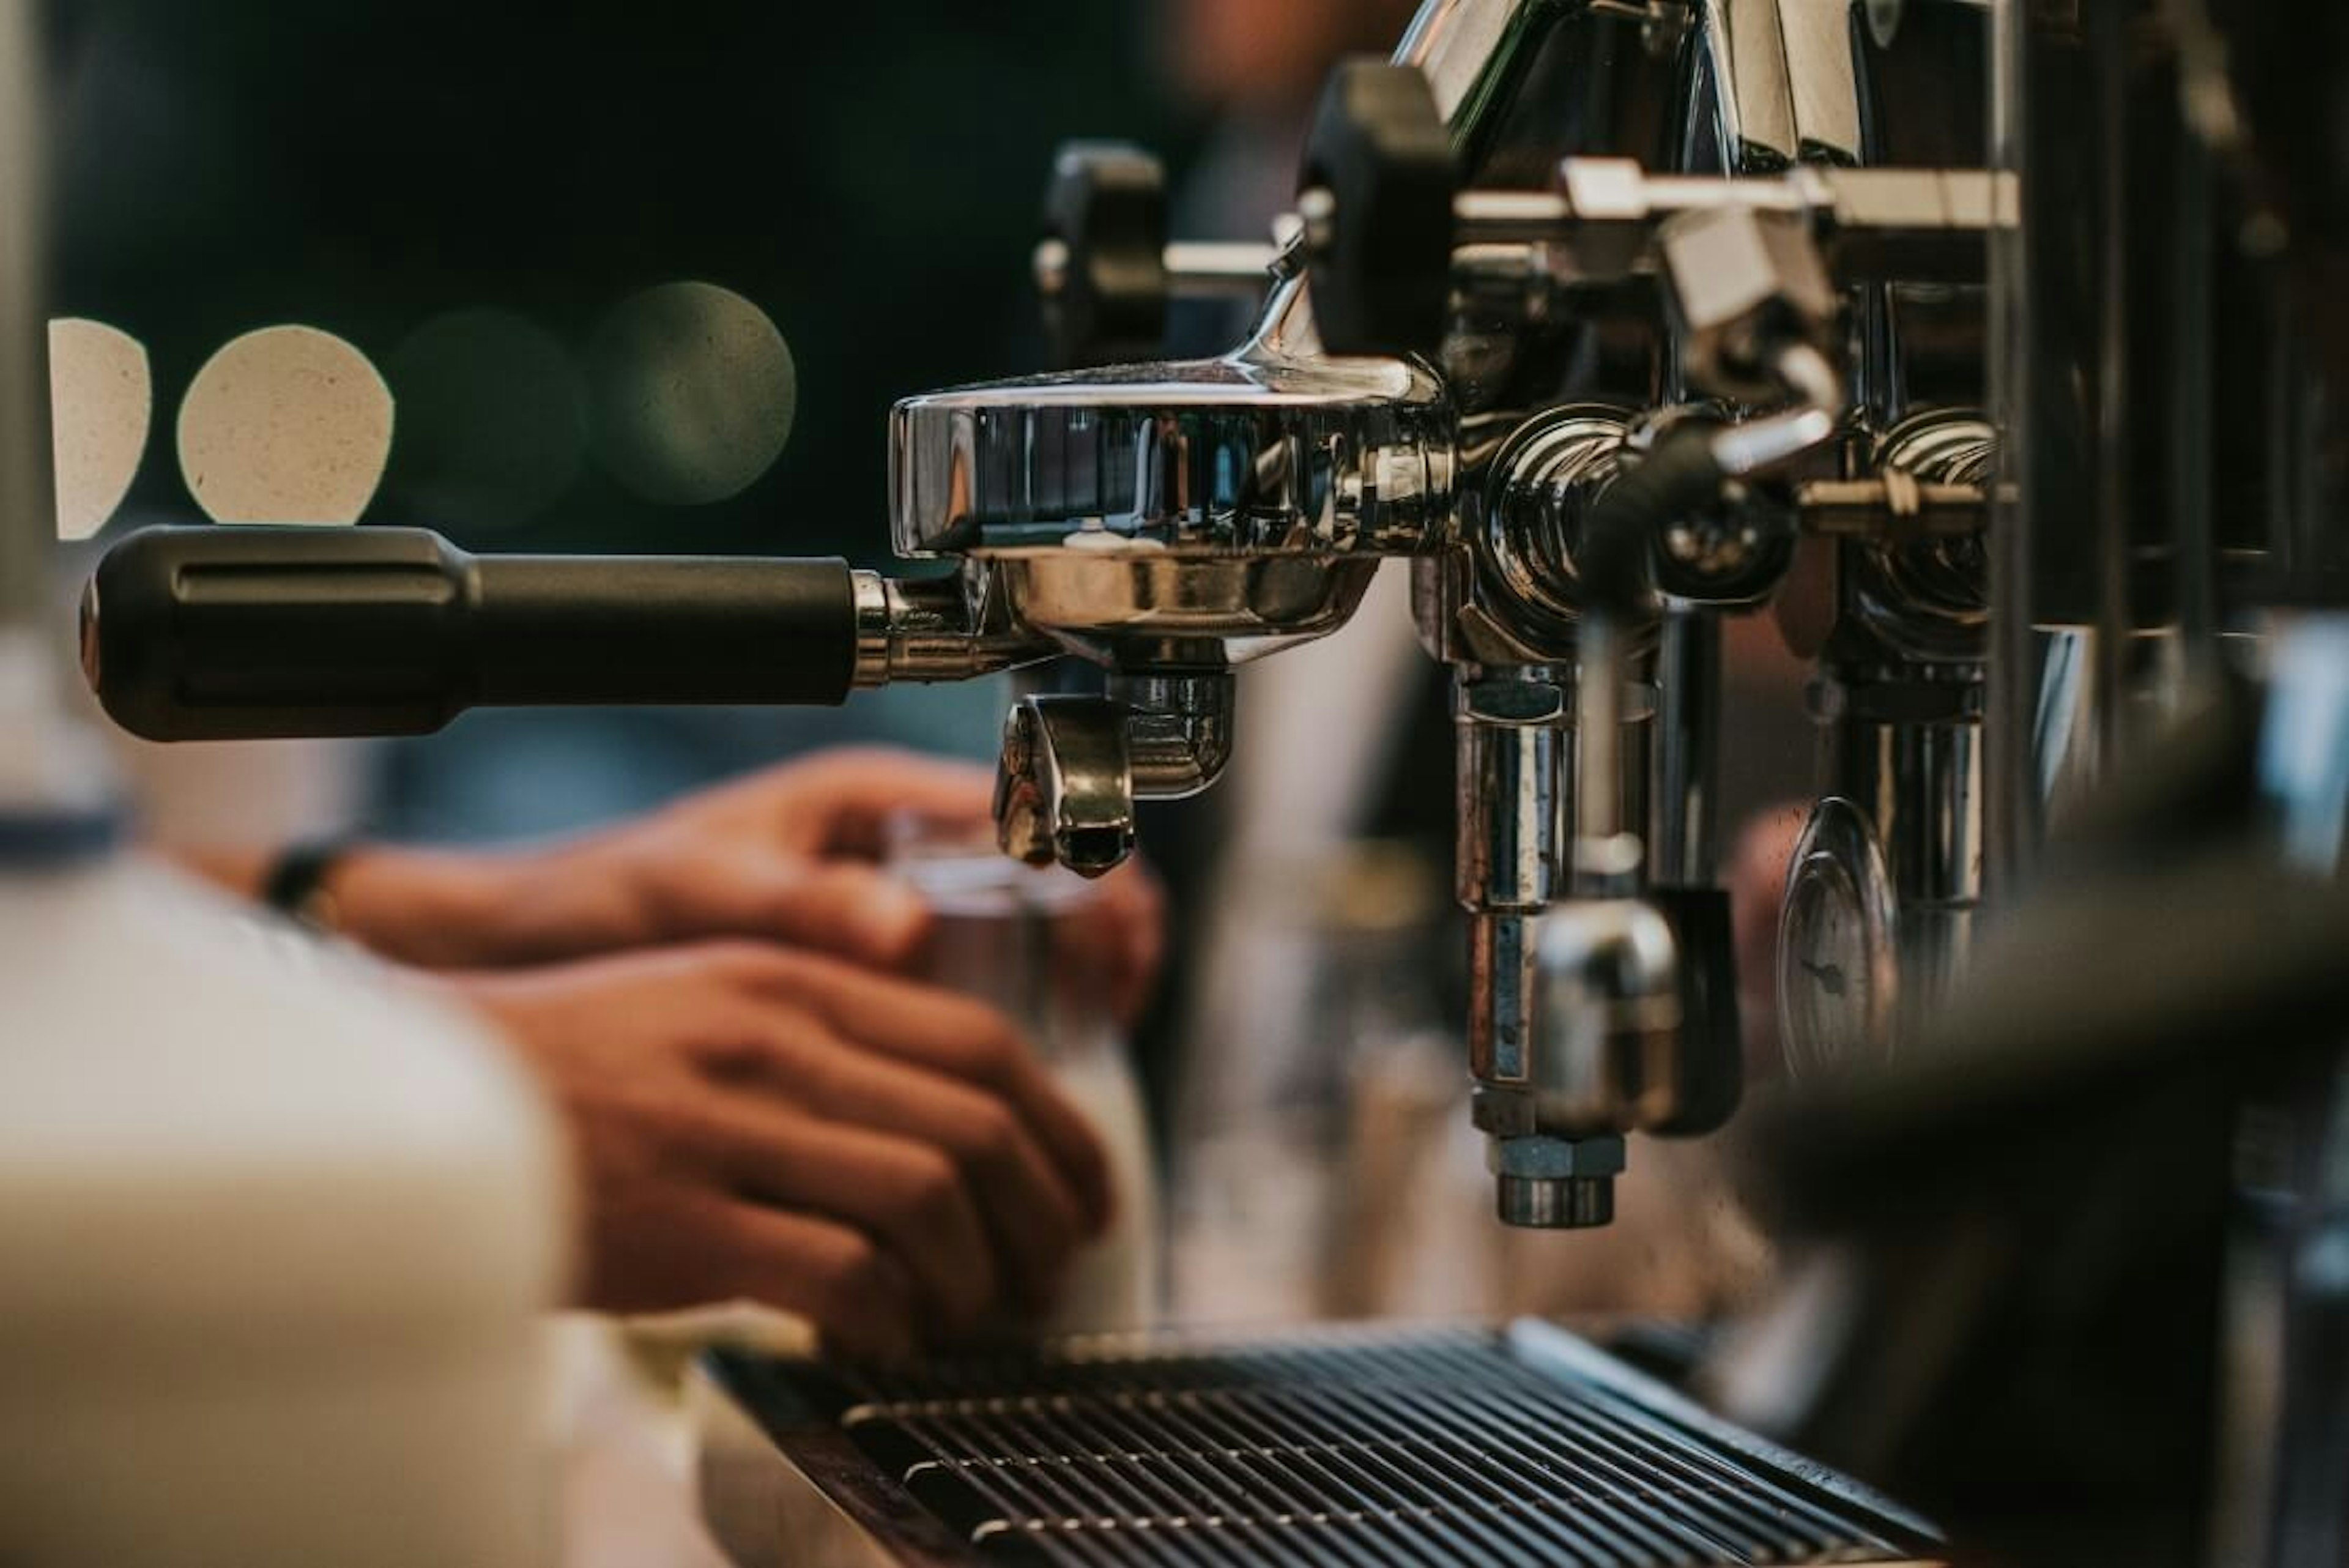 Una persona aprende a utilizar una máquina de espresso profesional y obtén el conocimiento y herramientas que un barista requiere para abrir una cafetería desde cero.